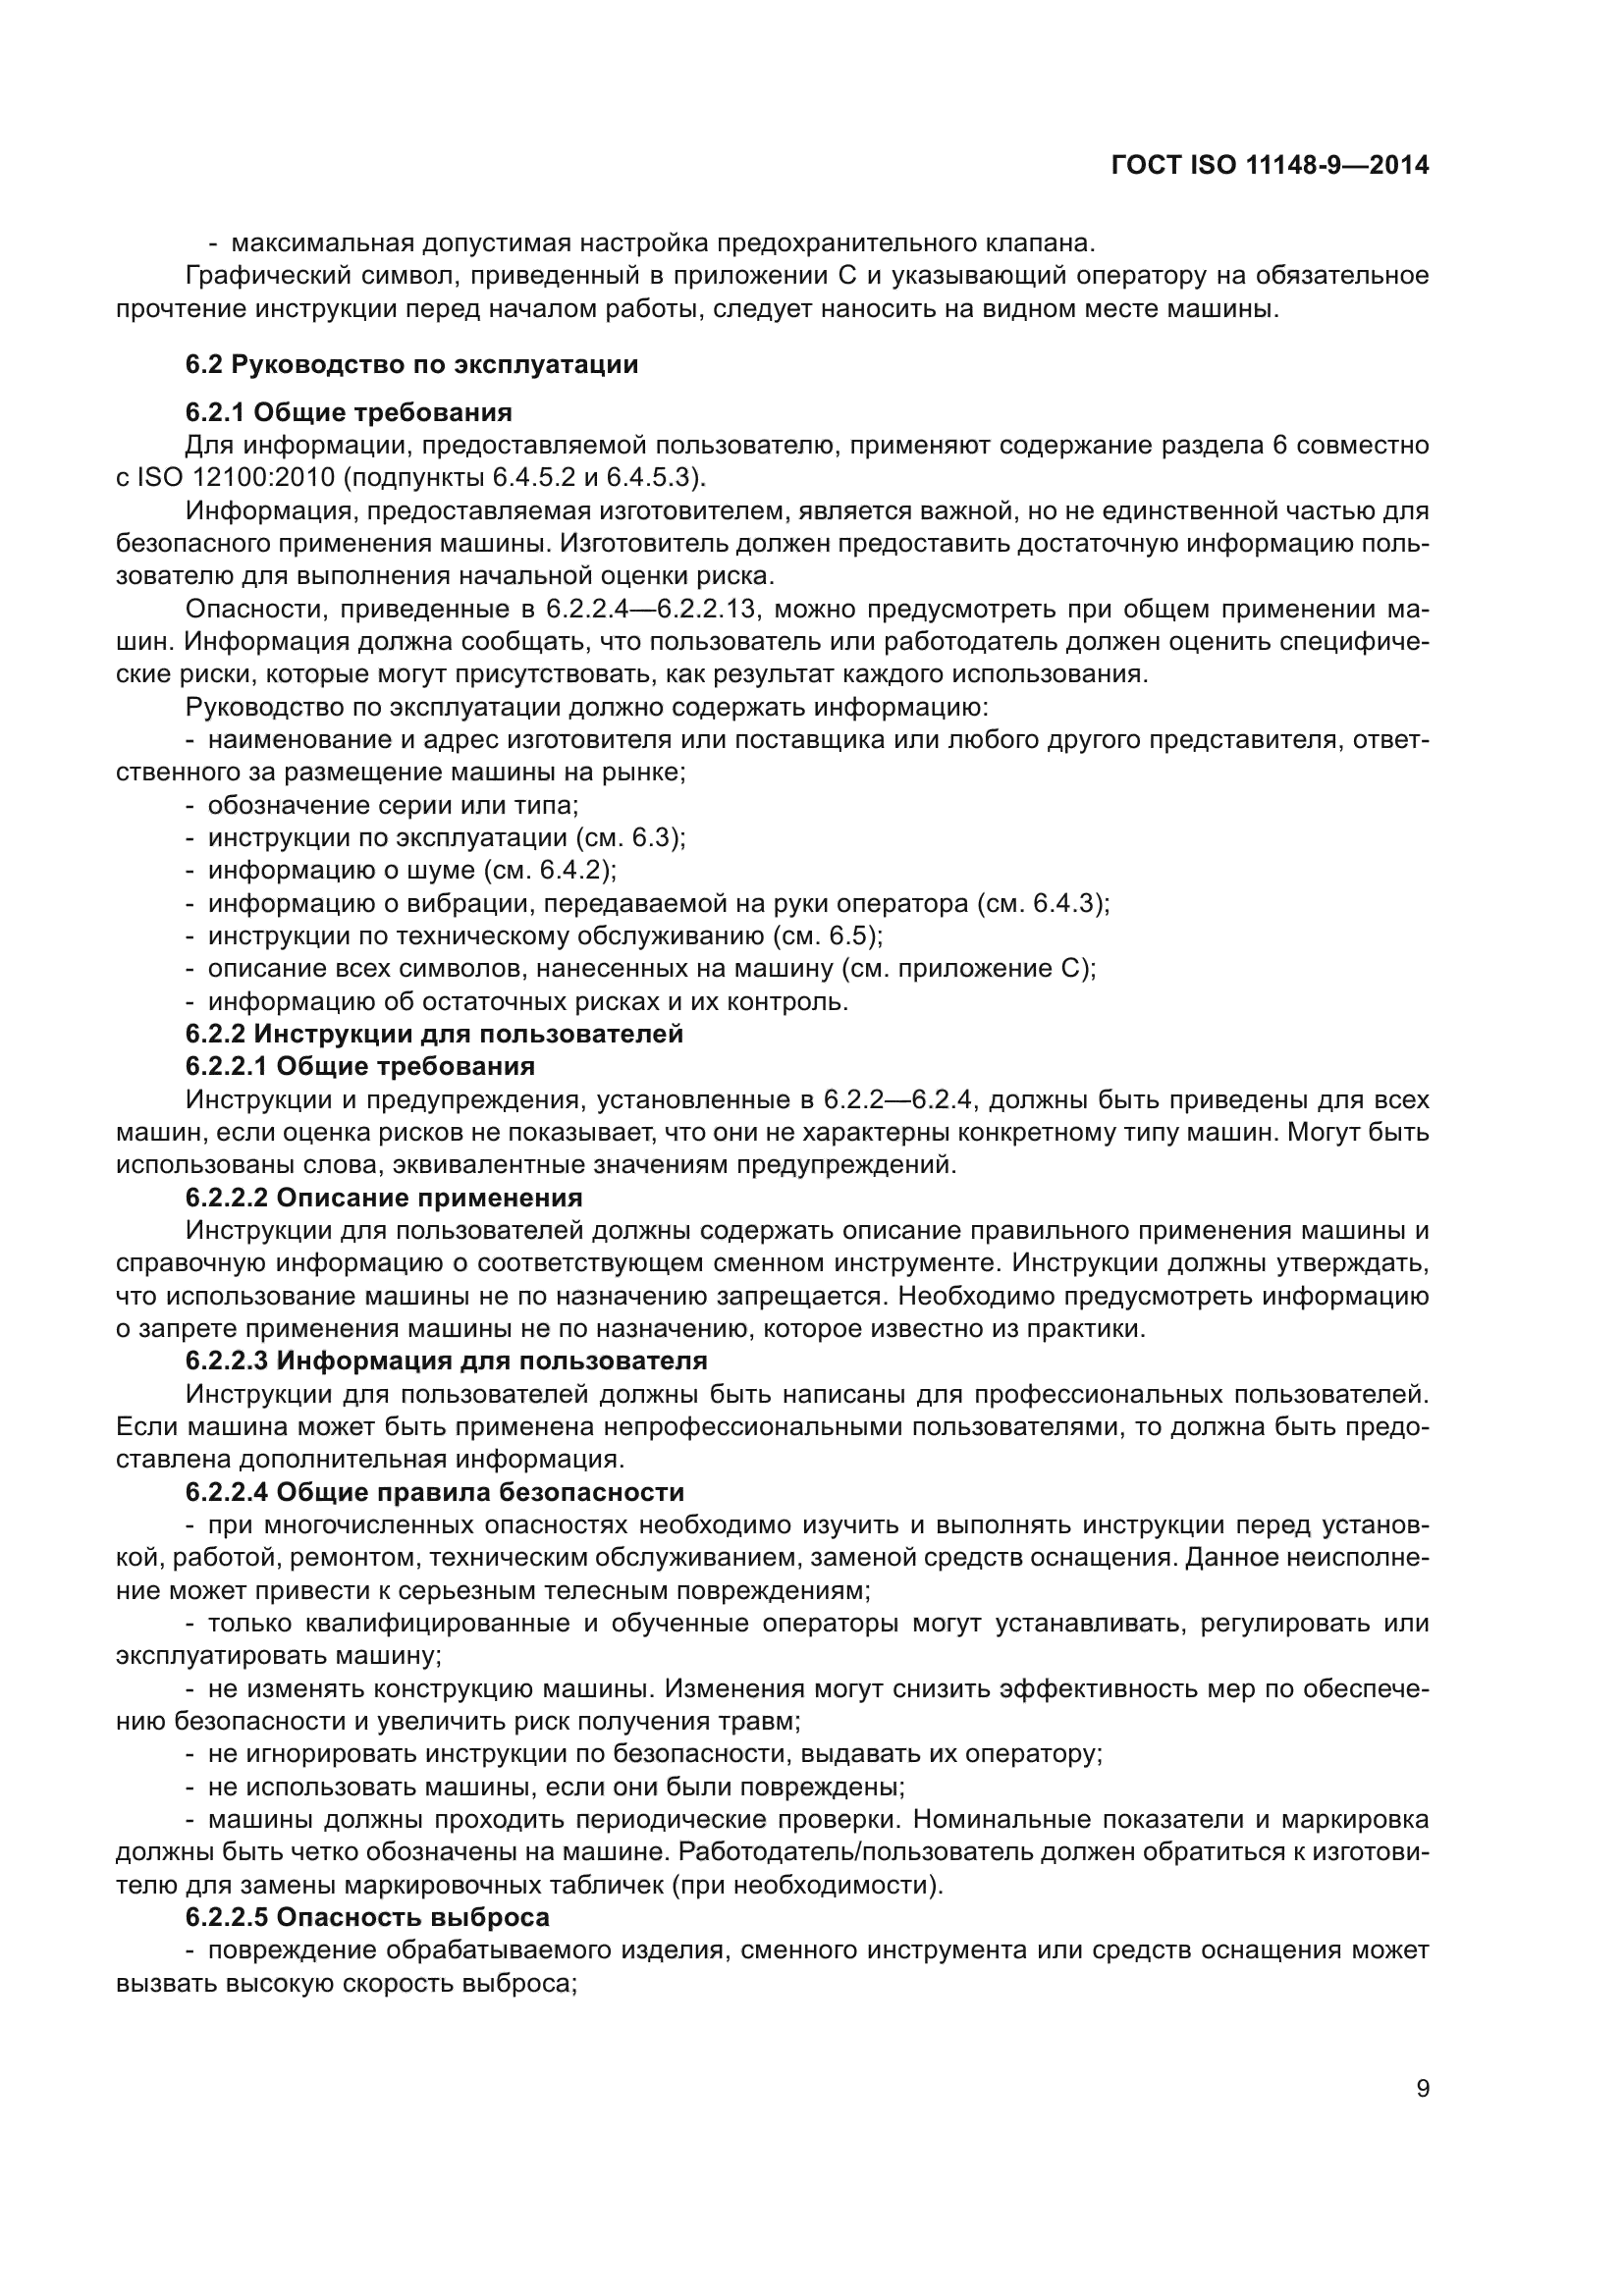 ГОСТ ISO 11148-9-2014